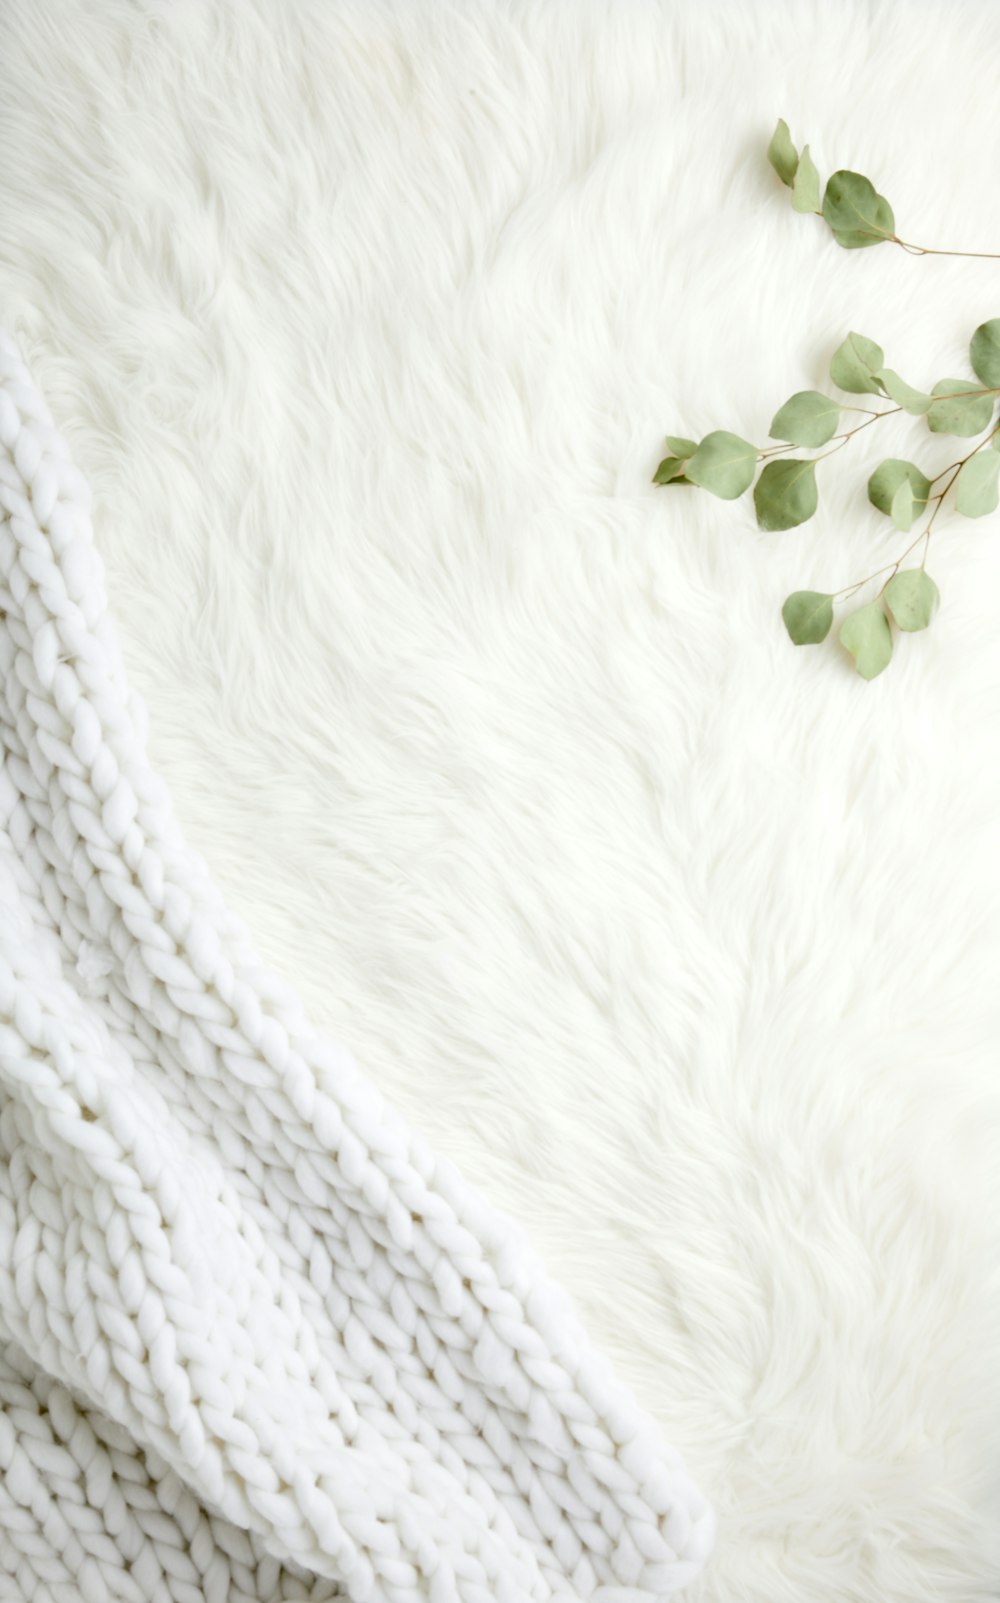 Grüne Blätter auf weißem Textil